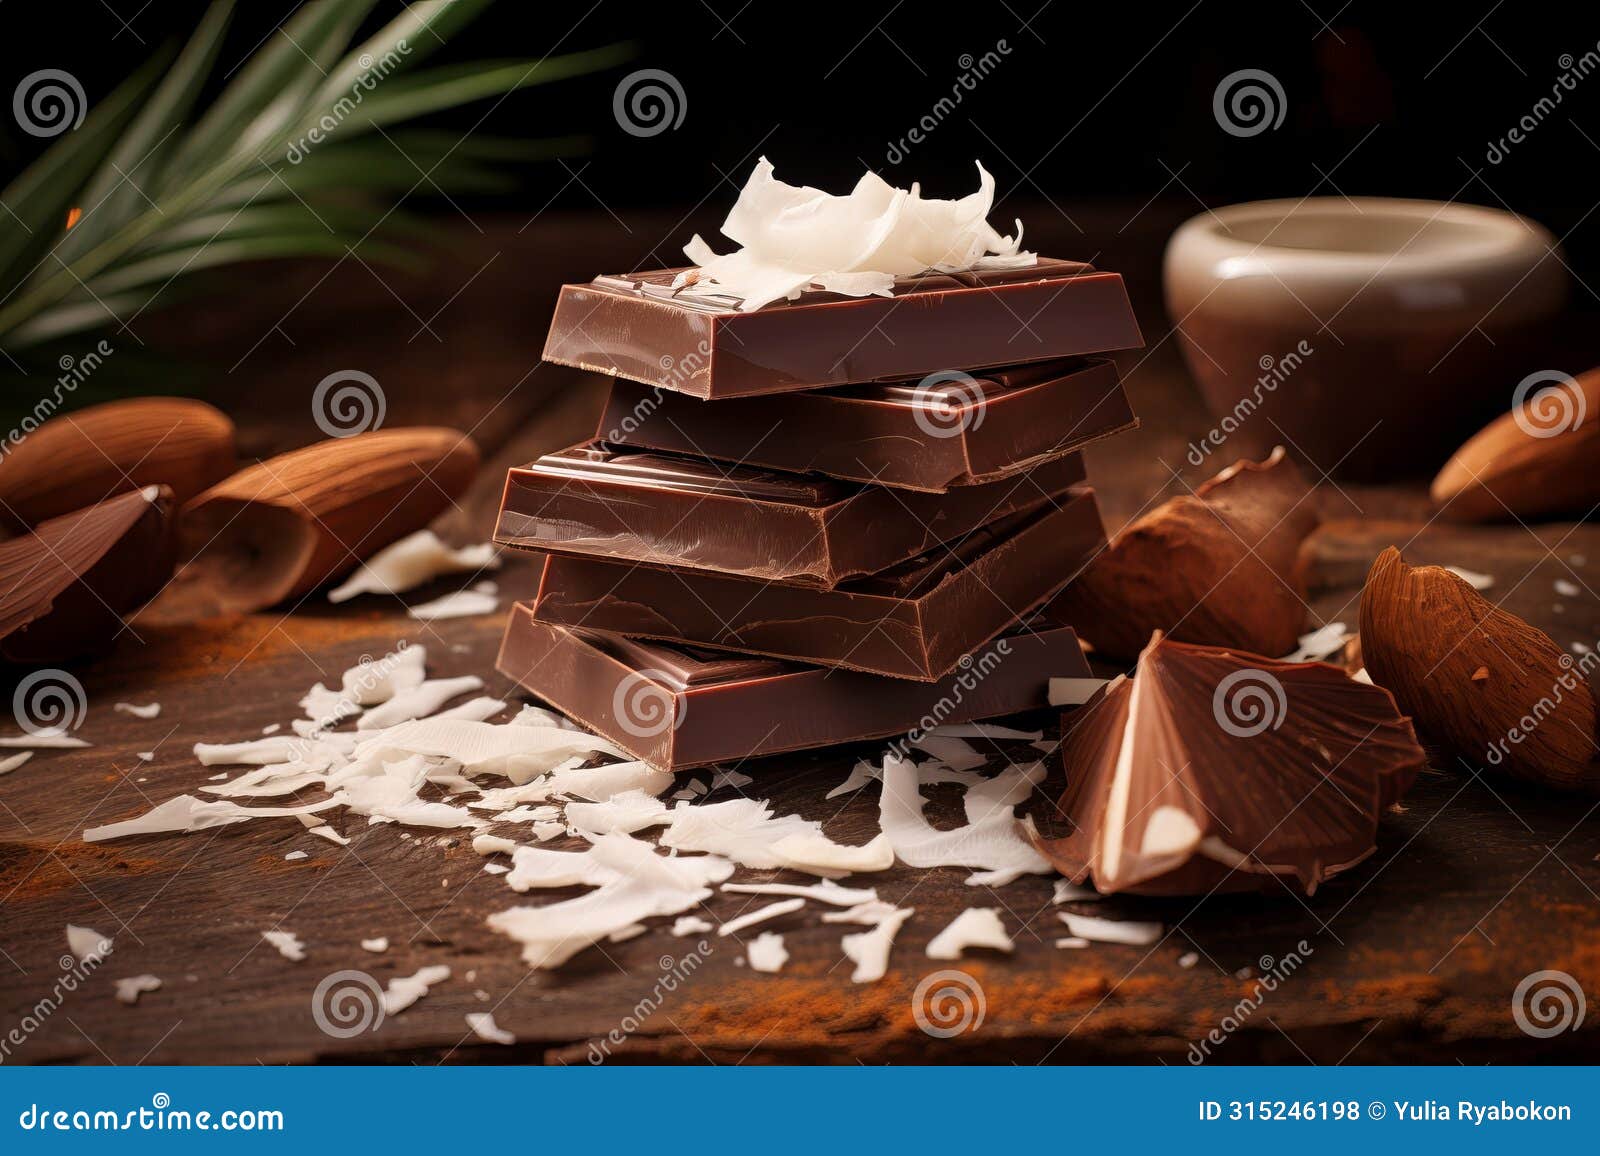 indulgent milk chocolate coconut. generate ai